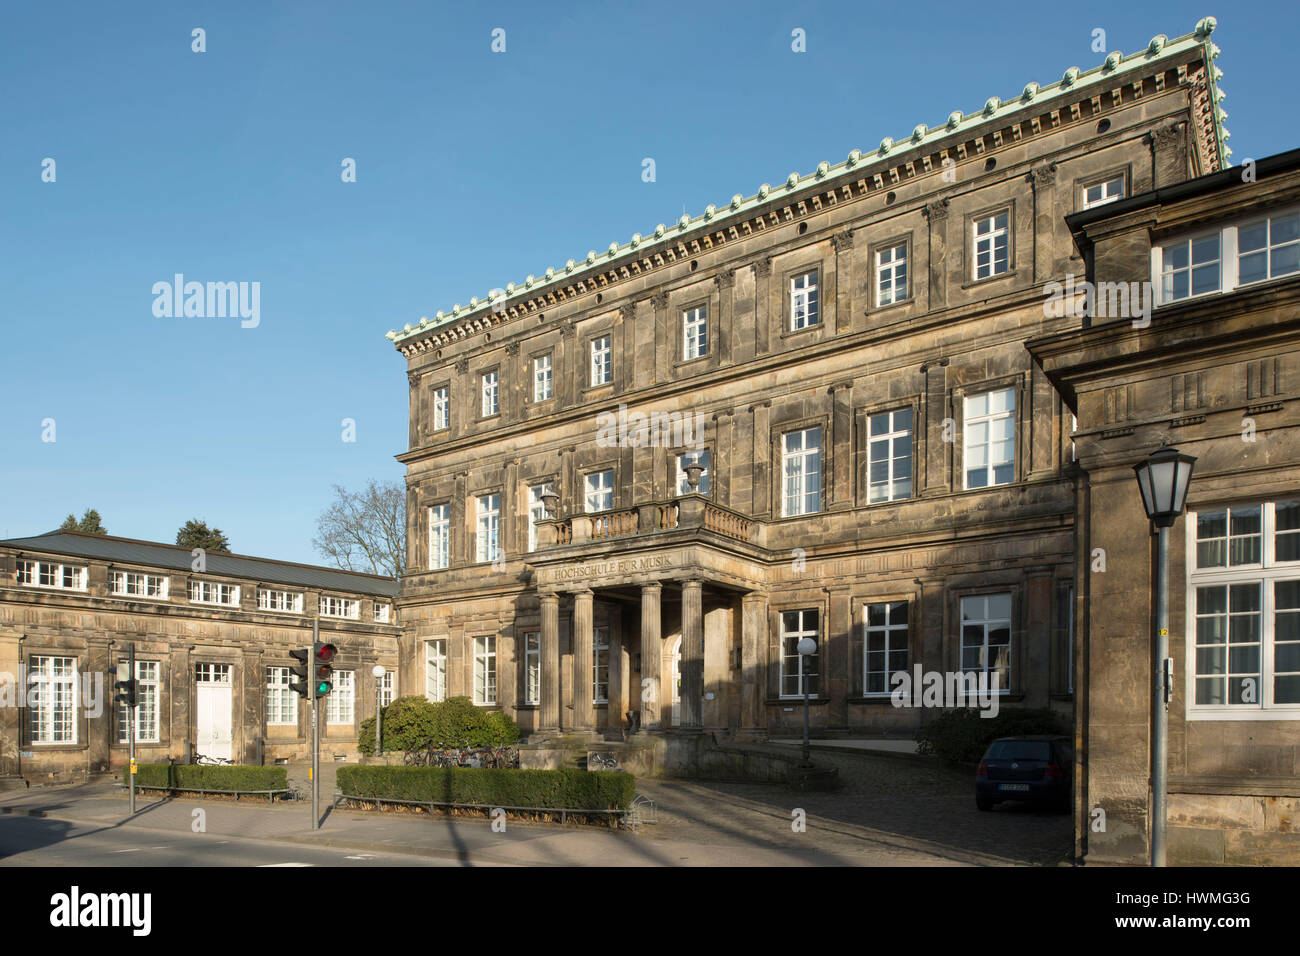 Deutschland, Nordrhein-Westfalen, Detmold, Hochschule für Musik, Neues Palais Stock Photo